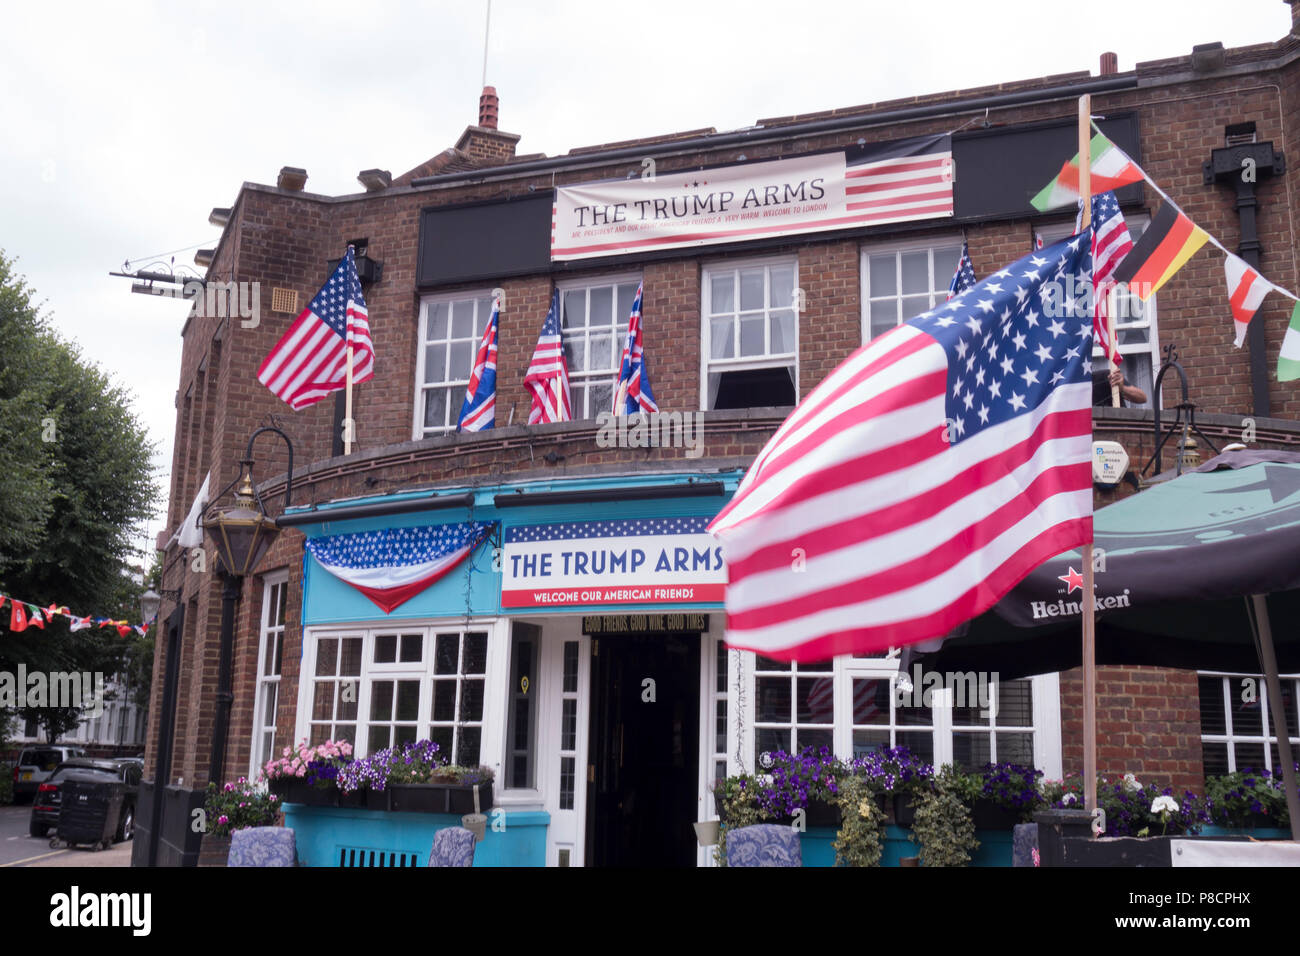 Londra, Regno Unito. 10 Luglio 2018: Il Pub Jamesons a West Kensington cambia la sua denominazione in "l'armi vincenti' per sostenere la visita del presidente degli Stati Uniti. Credito: William Barton. Credito: William Barton/Alamy Live News Foto Stock